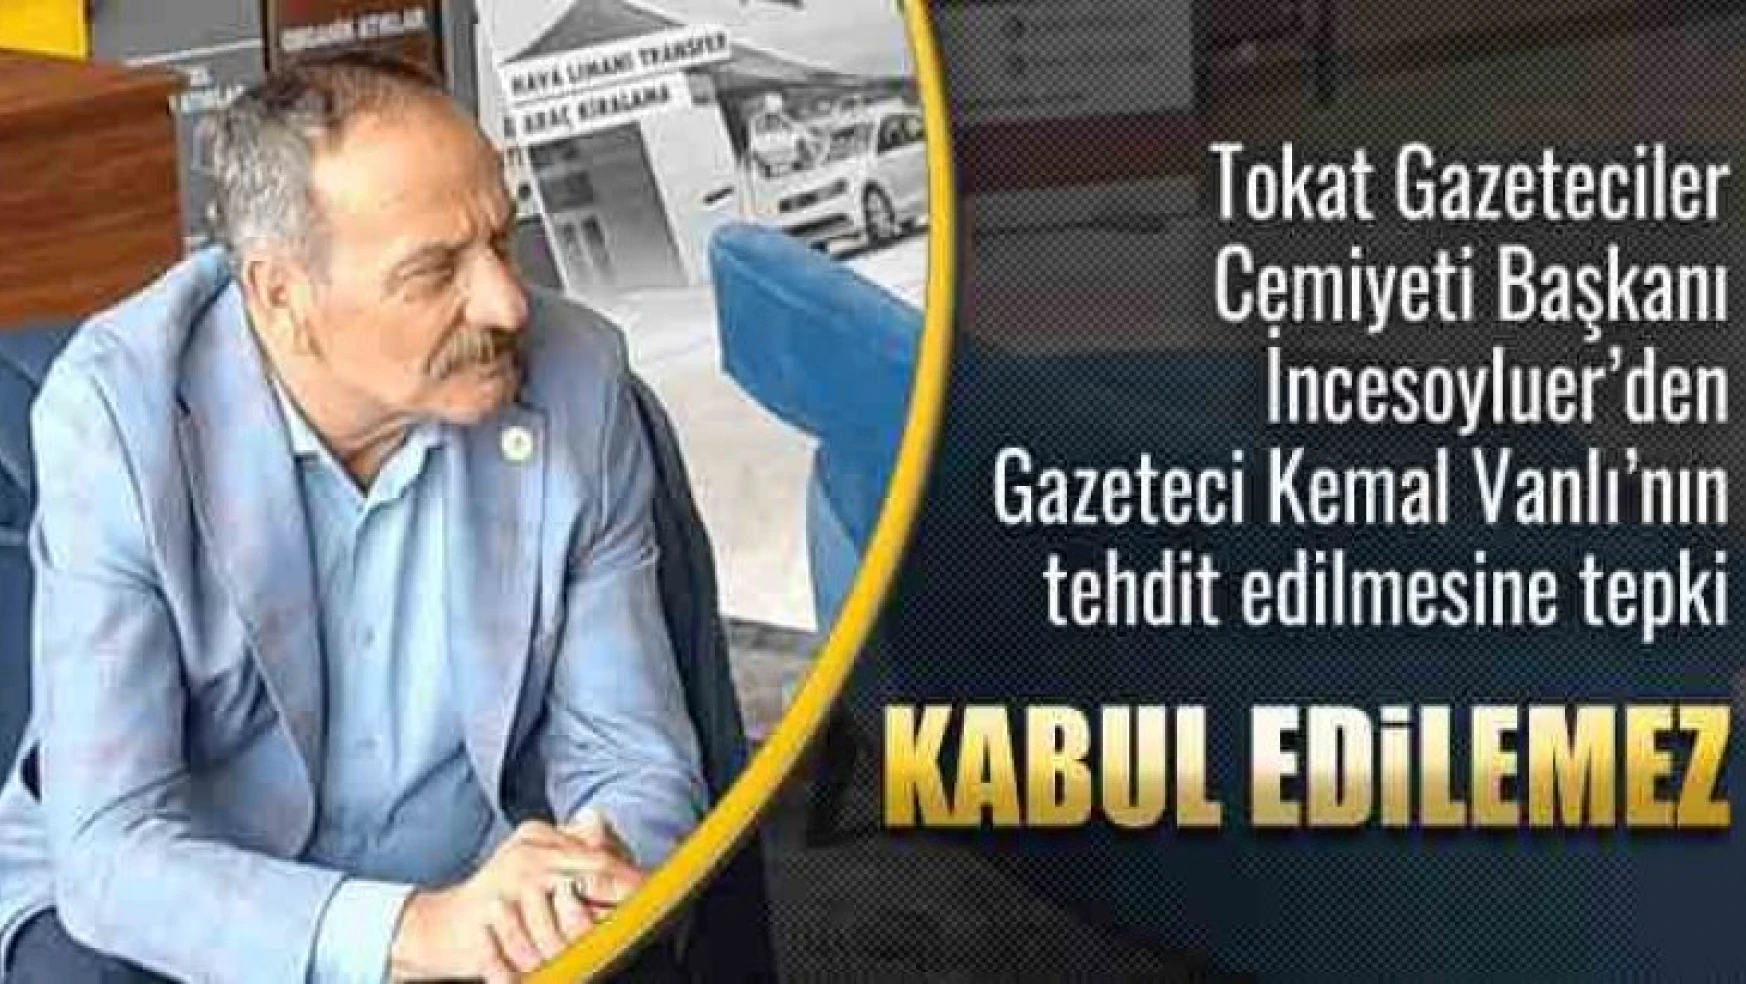 Gazeteci Vanlı'nın tehdit edilmesine Tokat Gazeteciler Cemiyeti'nden tepki